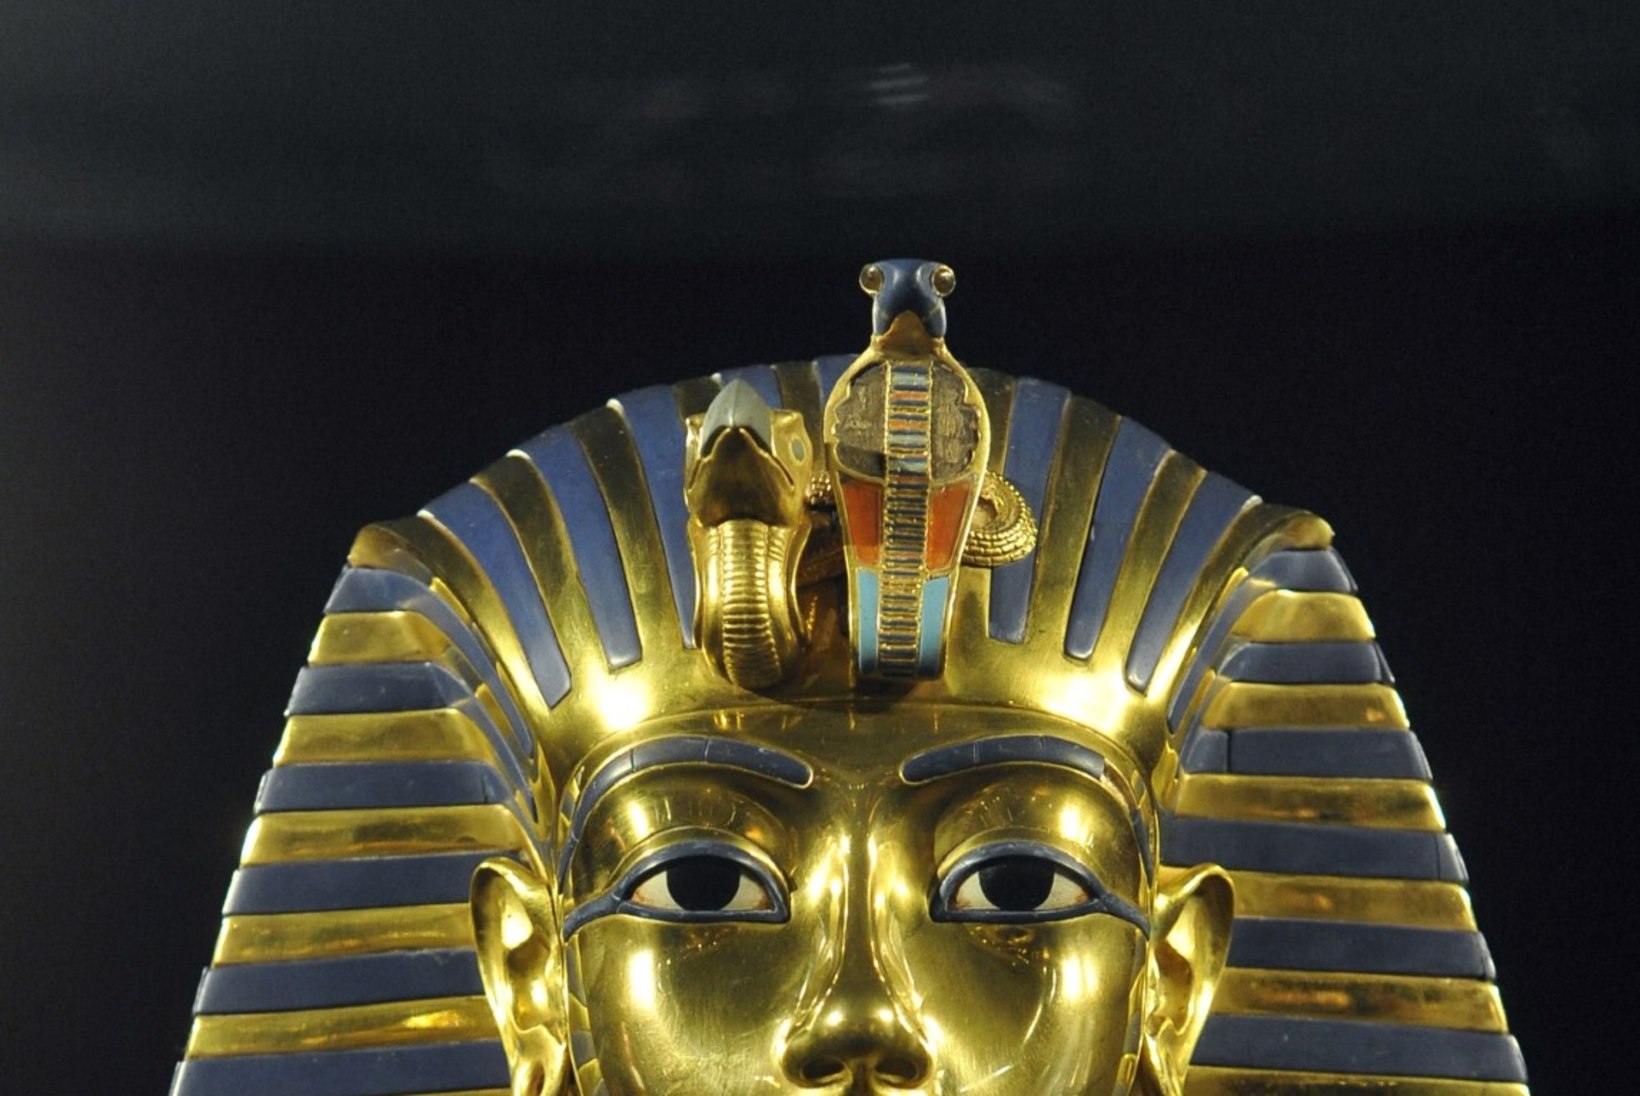 Leegitsedes teise ilma: Tutanhamon lahvatas oma sarkofaagis põlema